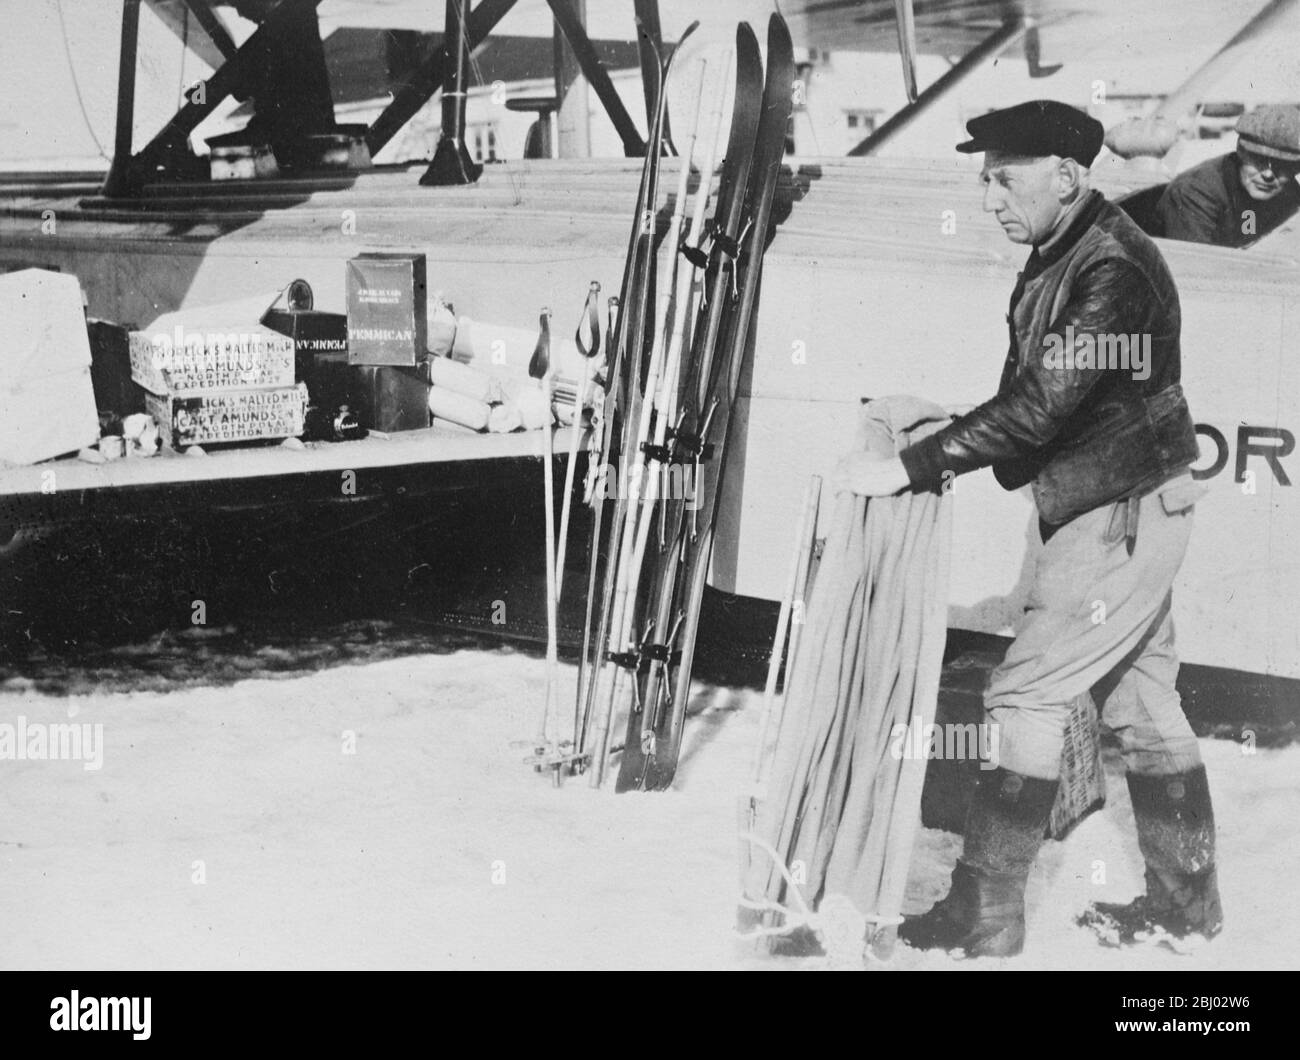 Mystère d'Amundsen , premières photos du début du vol polaire d'Amundsen Ellsworth - Amundsen supervise le chargement des fournitures alimentaires et du matériel de marchage juste avant le début - 17 juin 1925 Banque D'Images